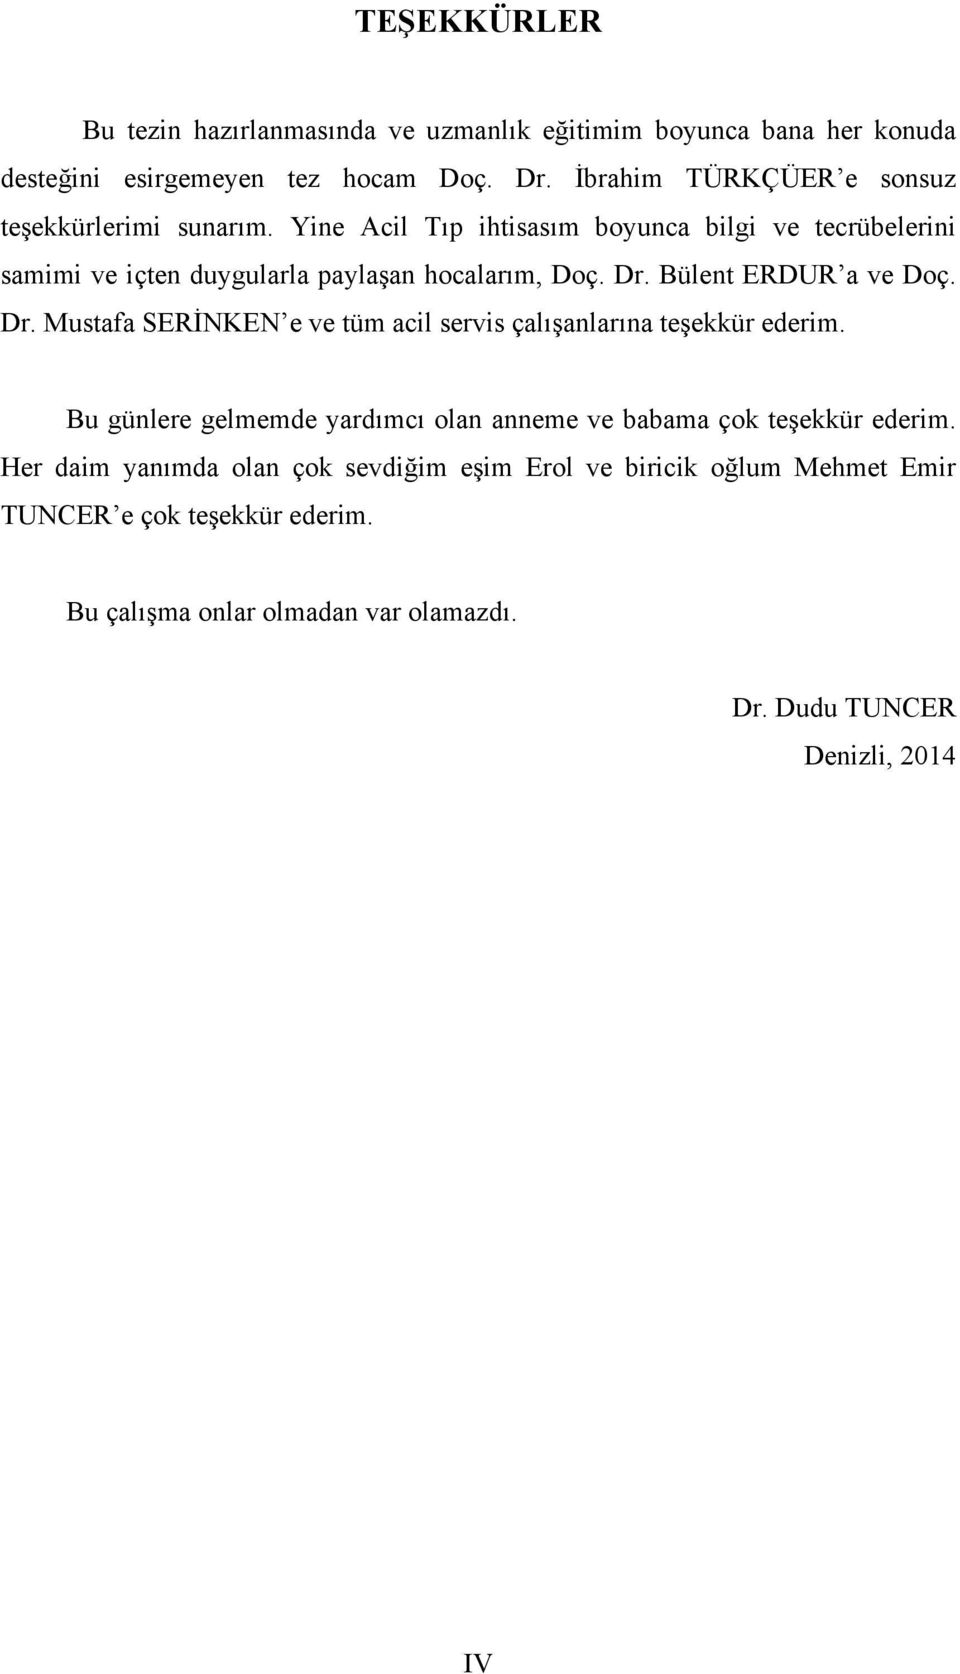 Dr. Bülent ERDUR a ve Doç. Dr. Mustafa SERİNKEN e ve tüm acil servis çalışanlarına teşekkür ederim.